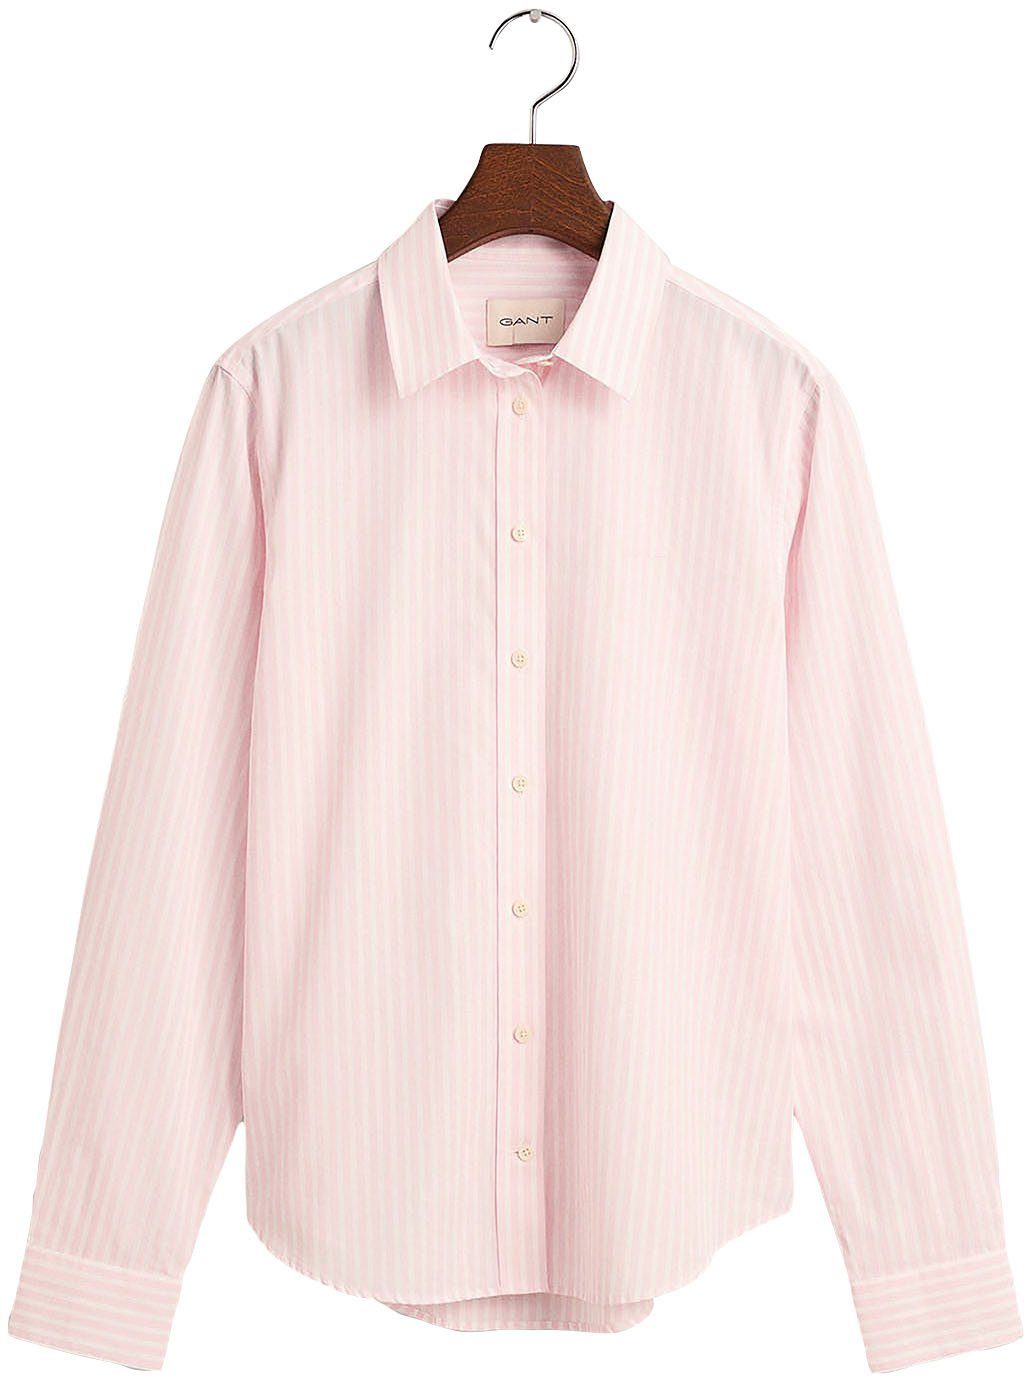 Gant Hemdbluse REG POPLIN STRIPED SHIRT mit einer kleinen Logostickerei auf der Brust Light pink